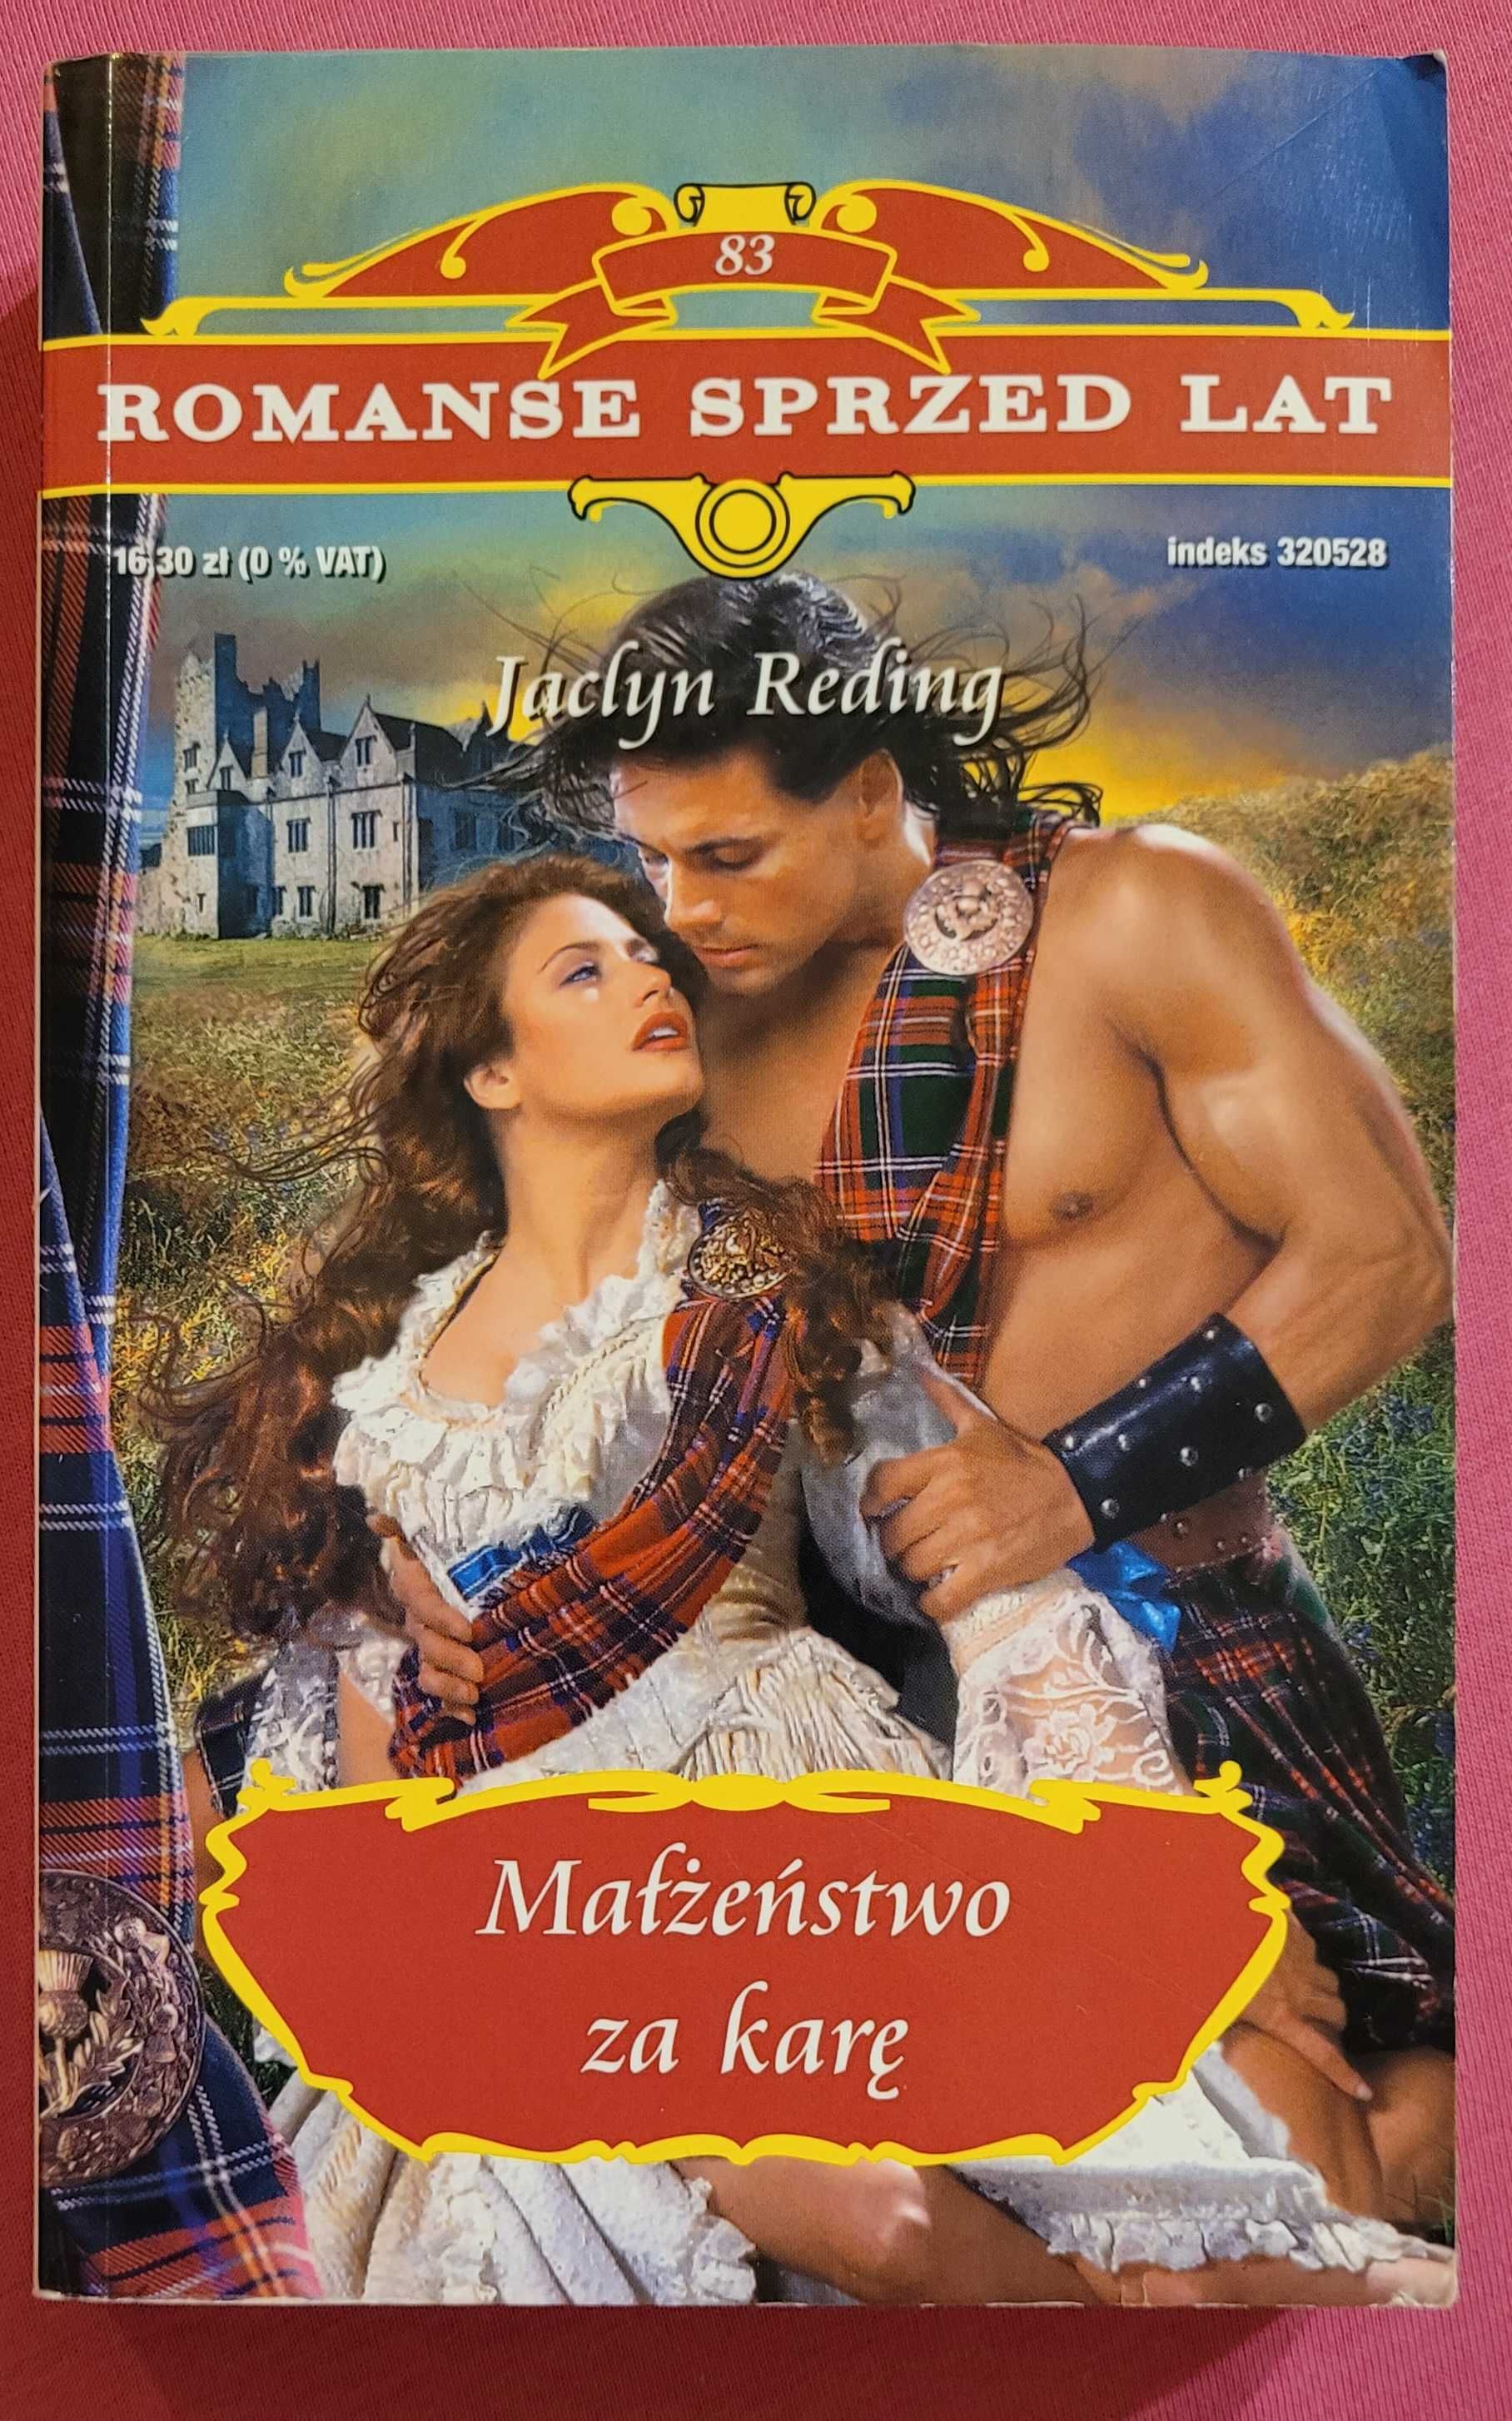 Romans historyczny "MALZENSTWO ZA KARE" autor Jaclyn Reding RSL nr 83